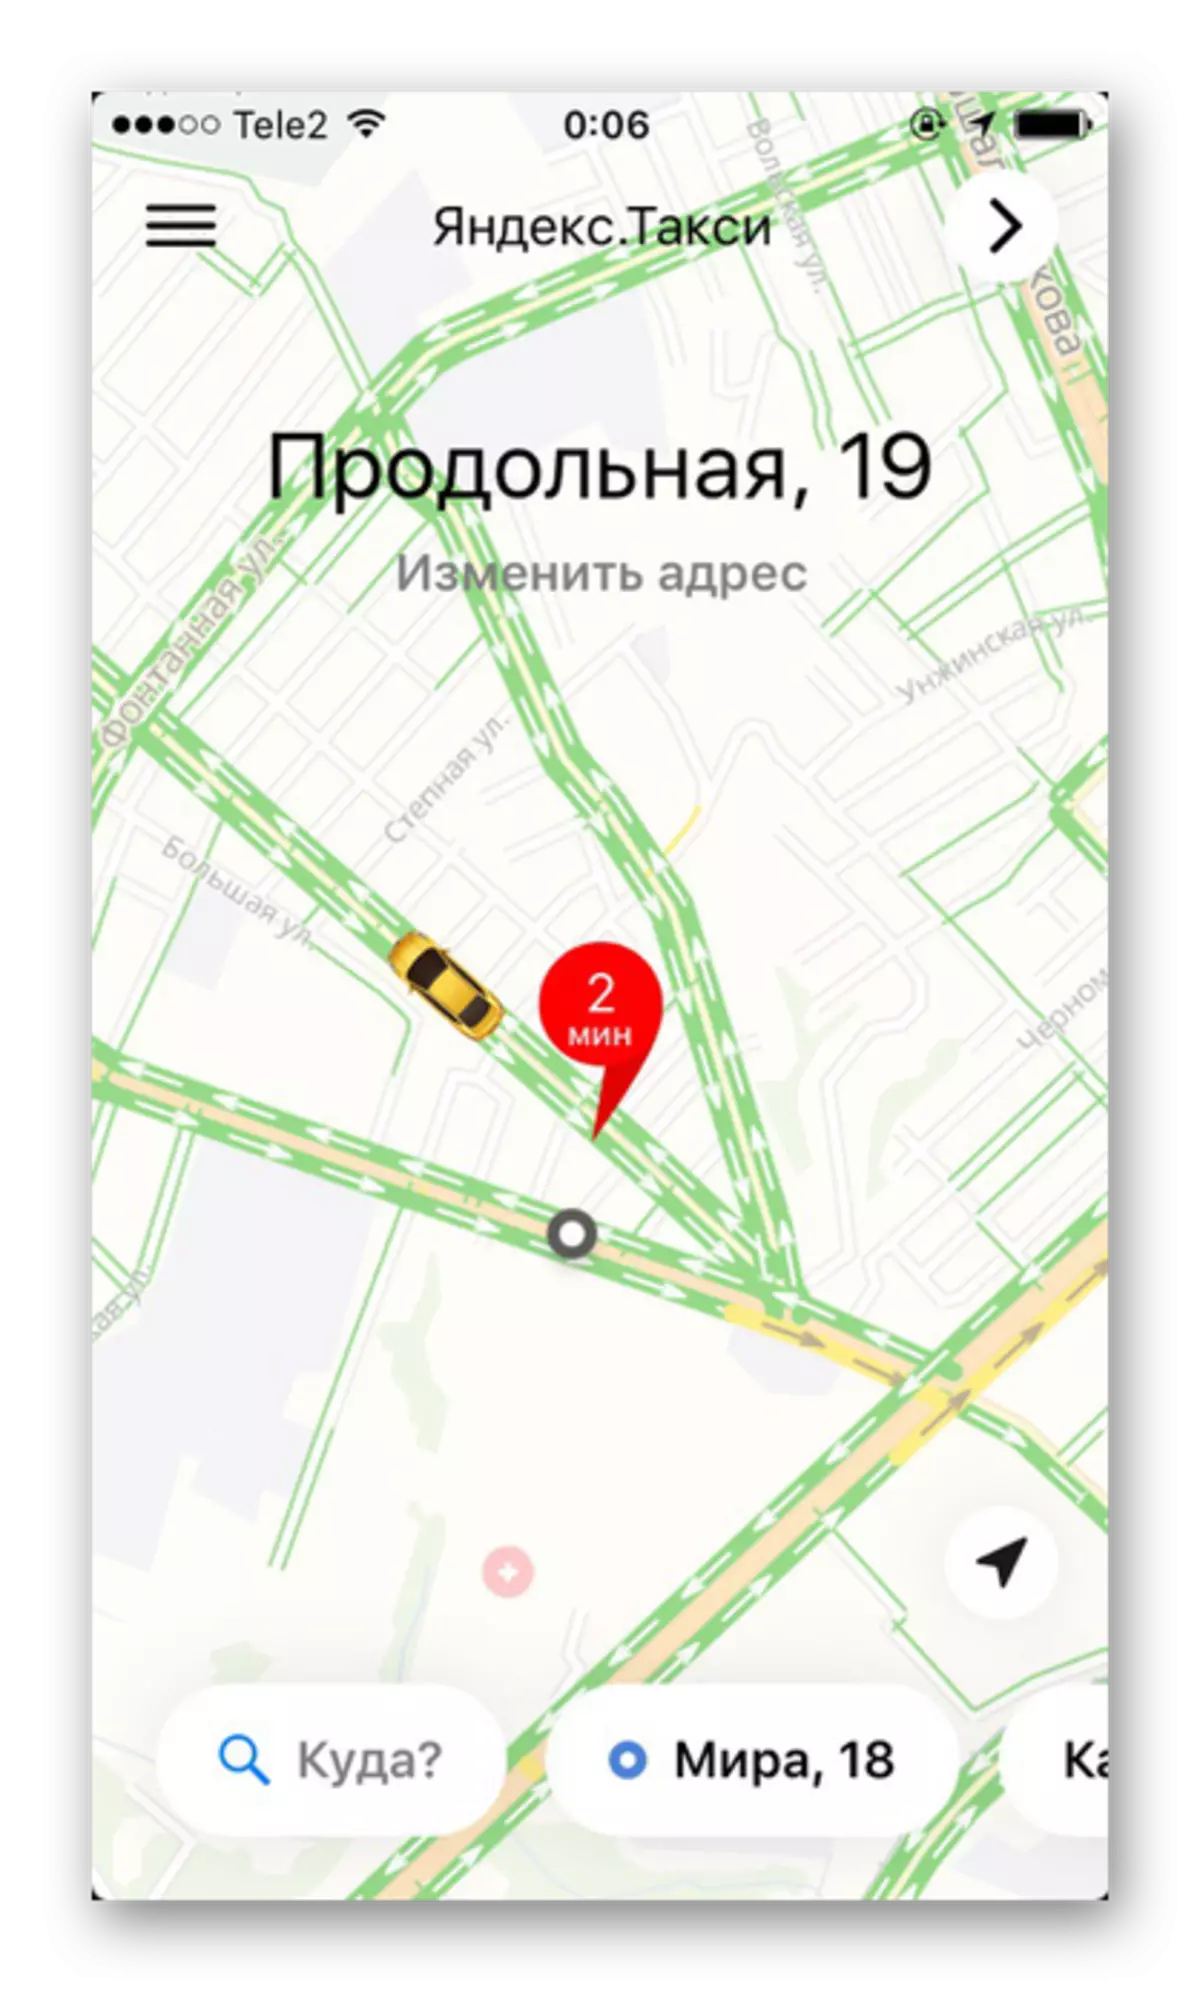 Yandex मधील रहदारी जाम आणि रोड वर्कलोड सक्षम करणे आयफोनवर